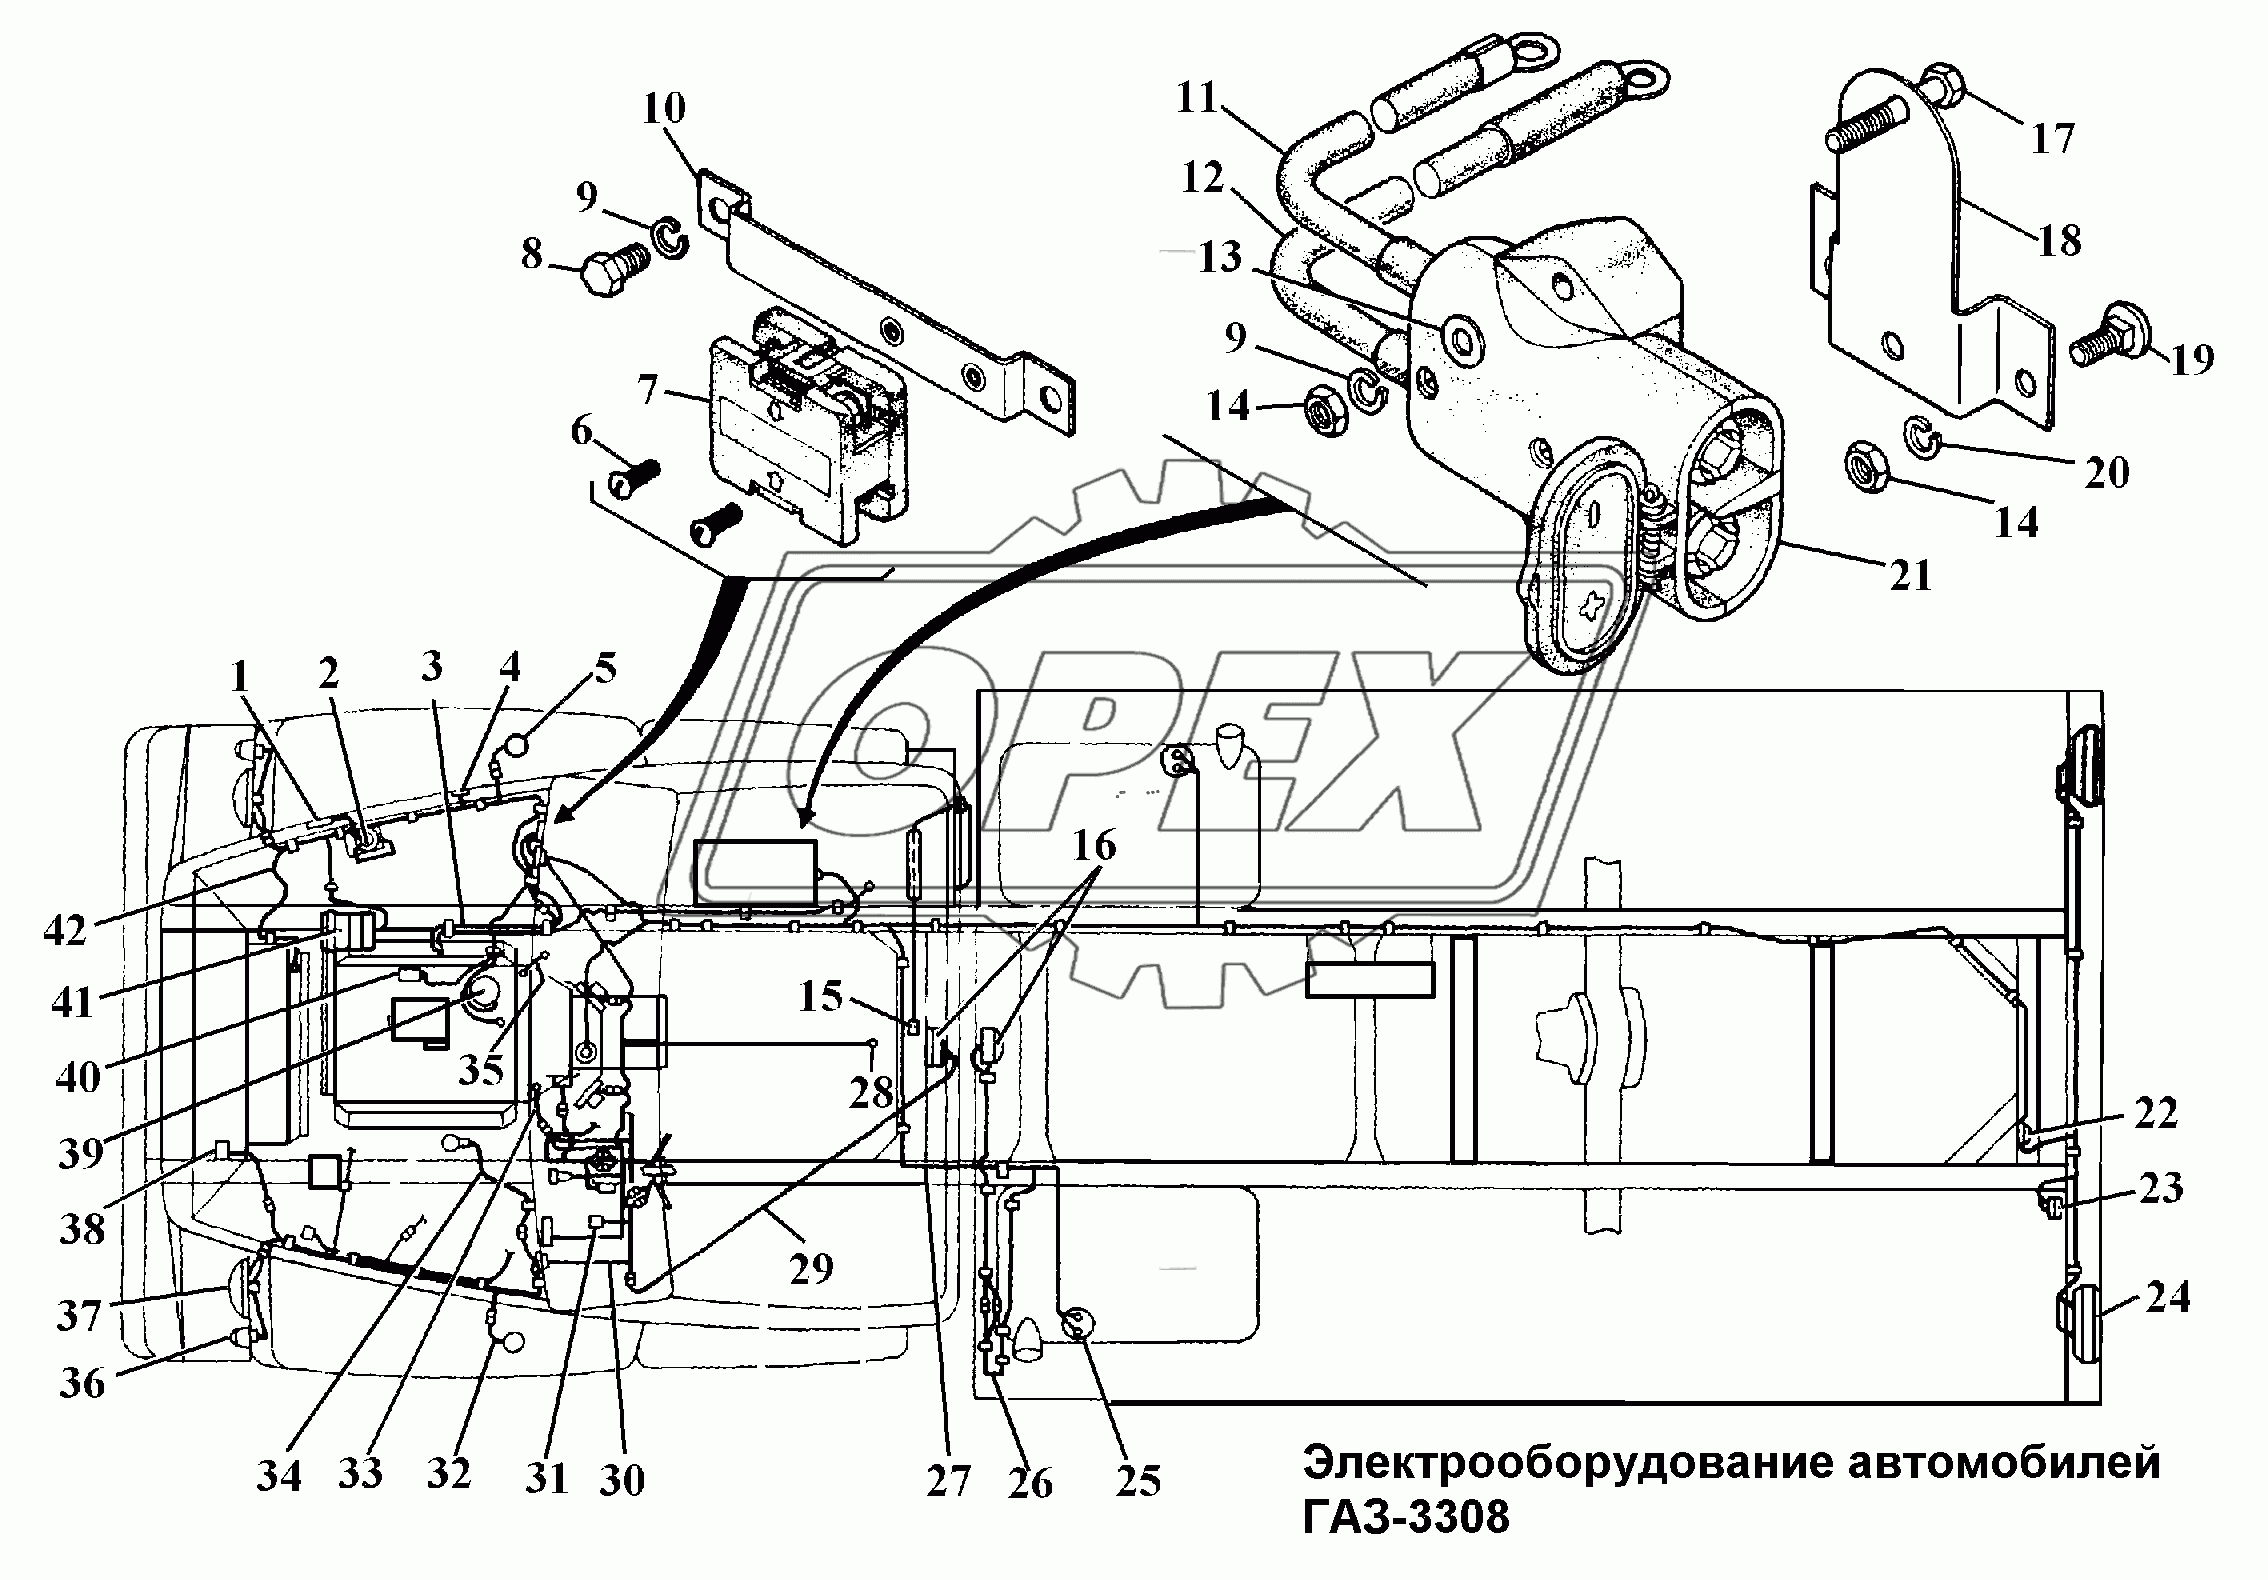 Электроообрудование автомобилей ГАЗ-3308